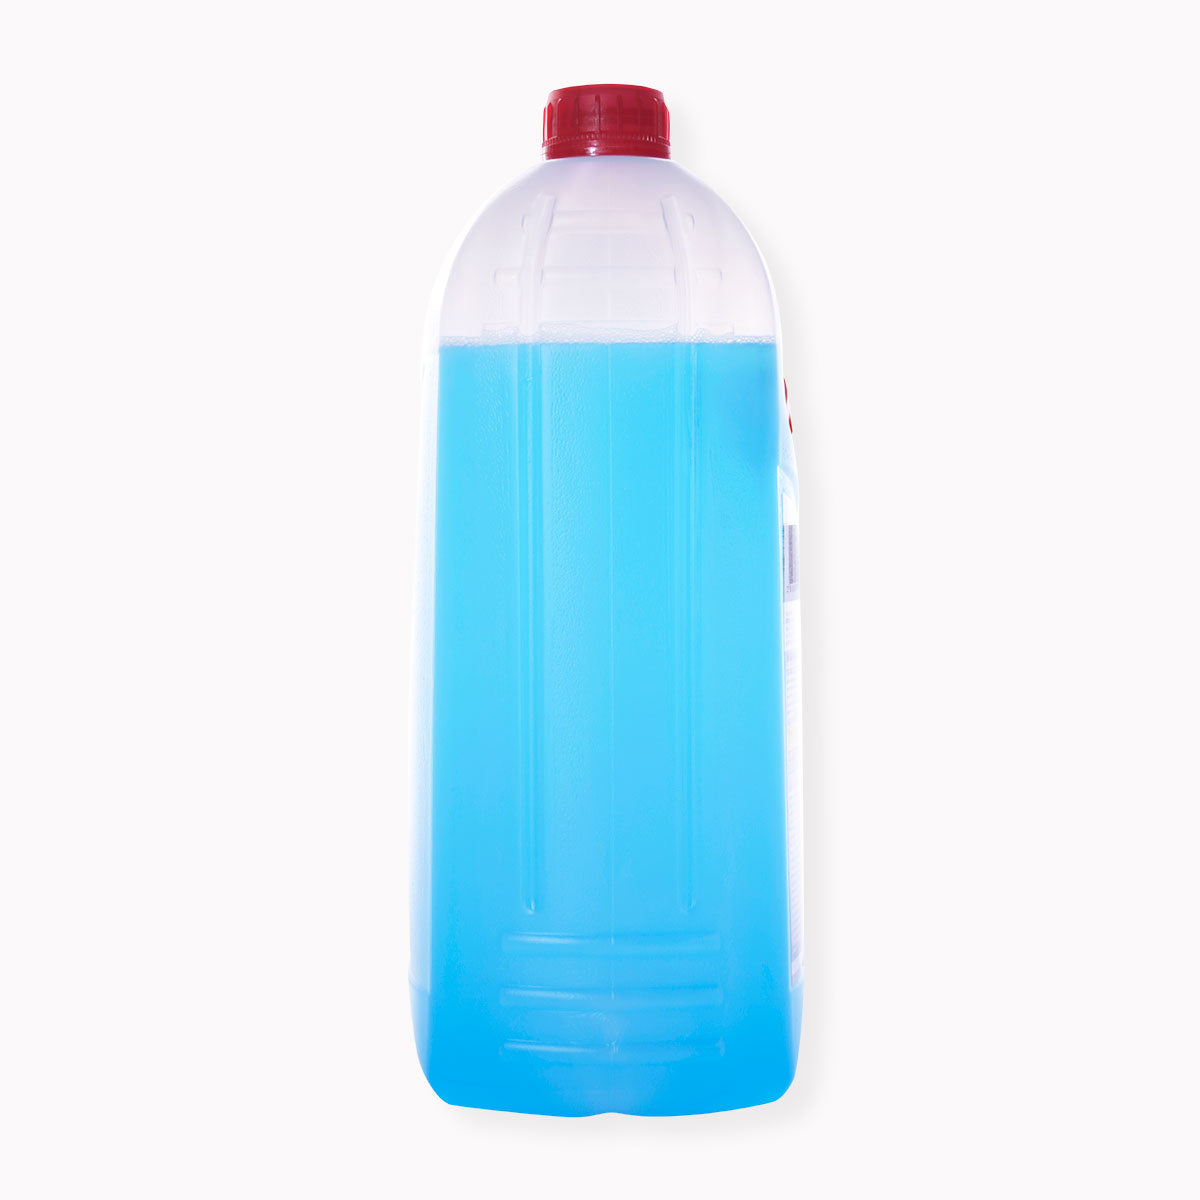 ATROTRUCK zimska tekočina za vetrobransko steklo 5l do -60 °C modre barve v praktični embalaži. Zimska tekočina za vetrobransko steklo je proizvedena v sloveniji.